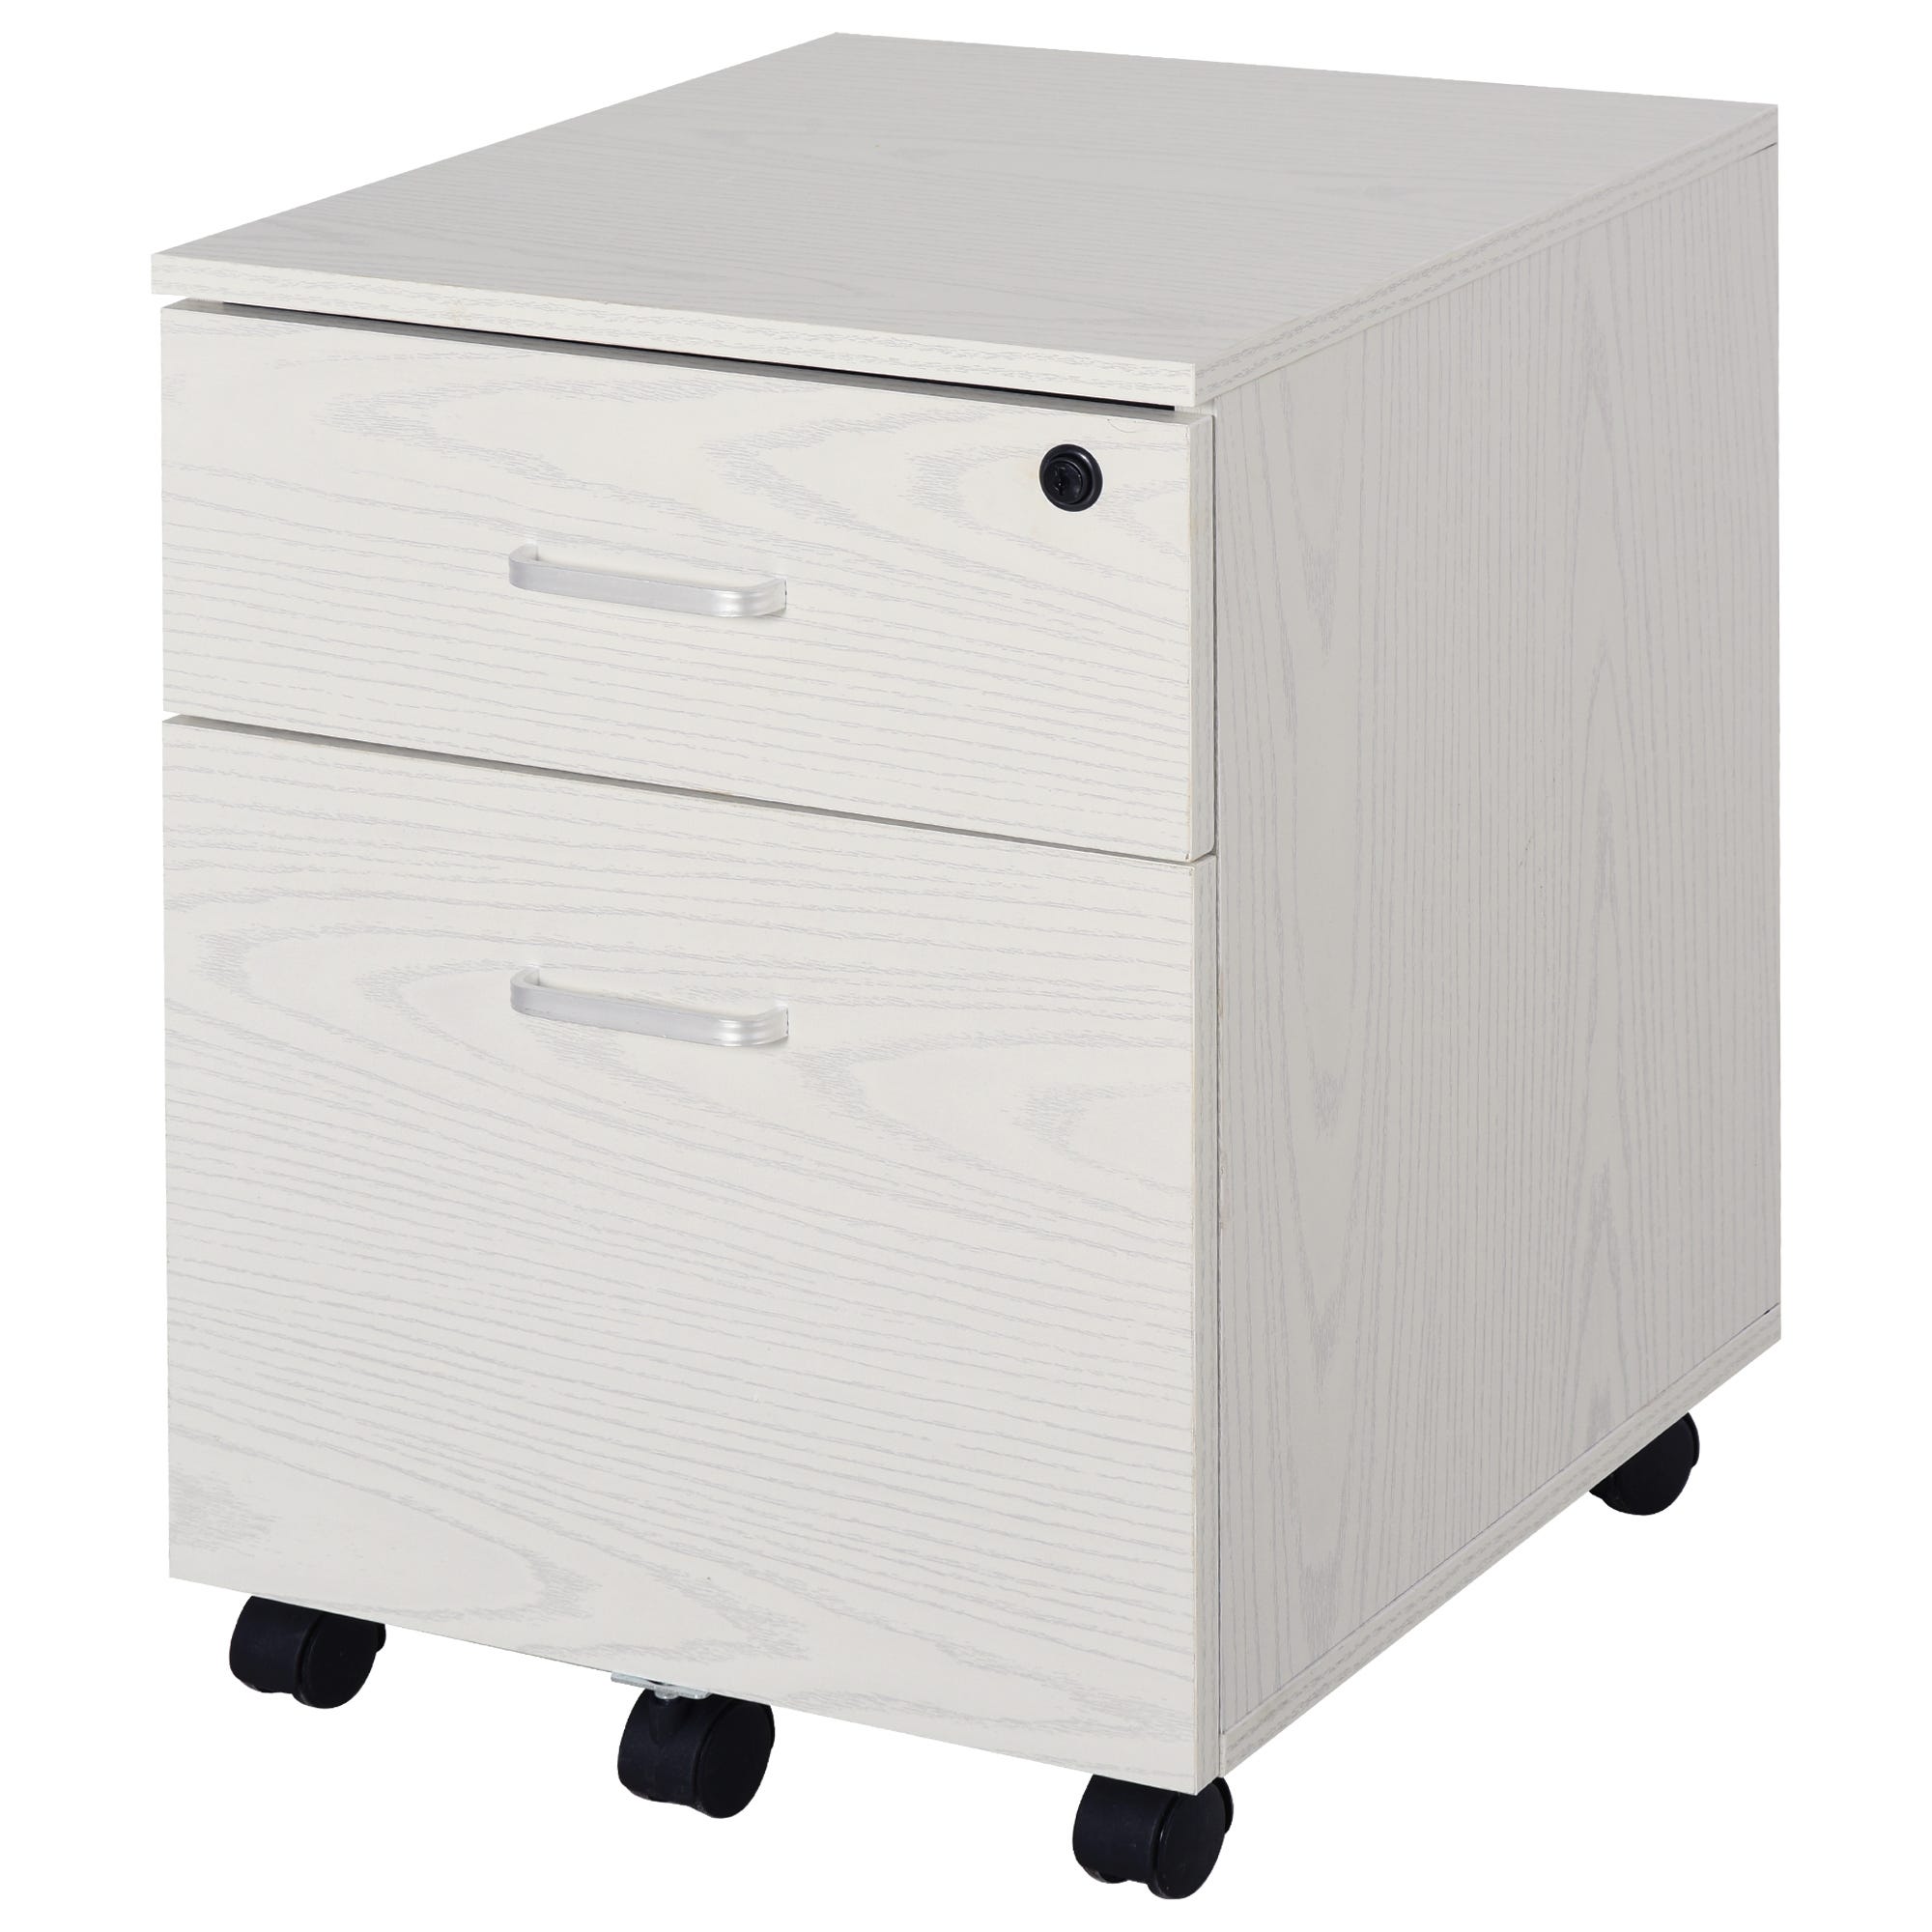 Cassettiera per scrivania, 3 cassetti, con serratura, colore: bianco,  dimensioni 40 cm x 44 cm x 65 cm (larghezza x profondità x altezza)